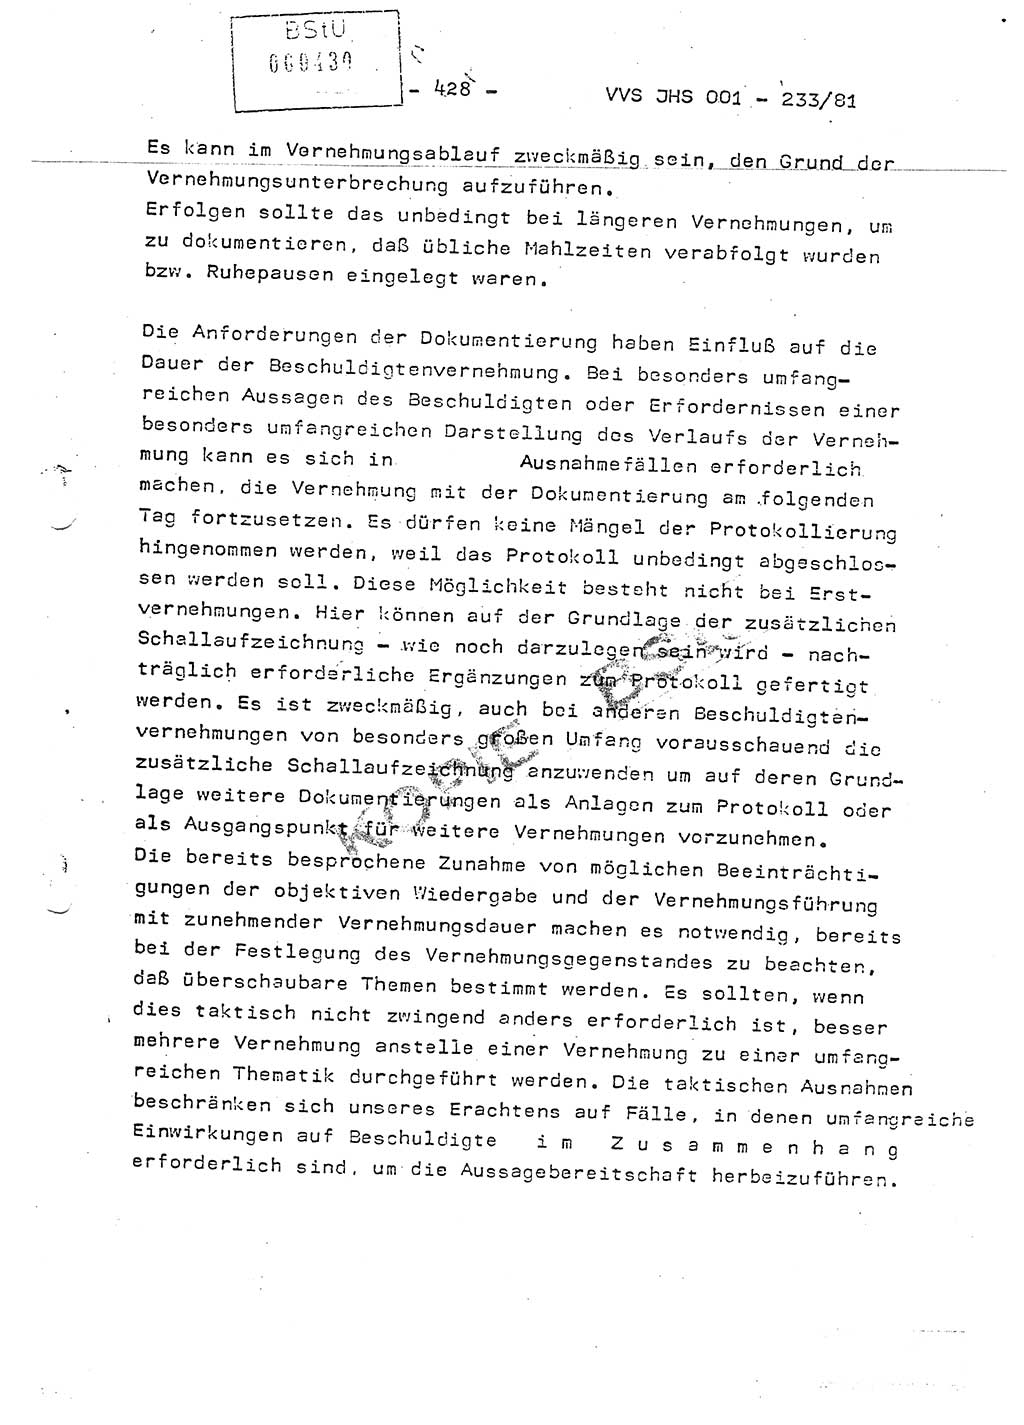 Dissertation Oberstleutnant Horst Zank (JHS), Oberstleutnant Dr. Karl-Heinz Knoblauch (JHS), Oberstleutnant Gustav-Adolf Kowalewski (HA Ⅸ), Oberstleutnant Wolfgang Plötner (HA Ⅸ), Ministerium für Staatssicherheit (MfS) [Deutsche Demokratische Republik (DDR)], Juristische Hochschule (JHS), Vertrauliche Verschlußsache (VVS) o001-233/81, Potsdam 1981, Blatt 428 (Diss. MfS DDR JHS VVS o001-233/81 1981, Bl. 428)